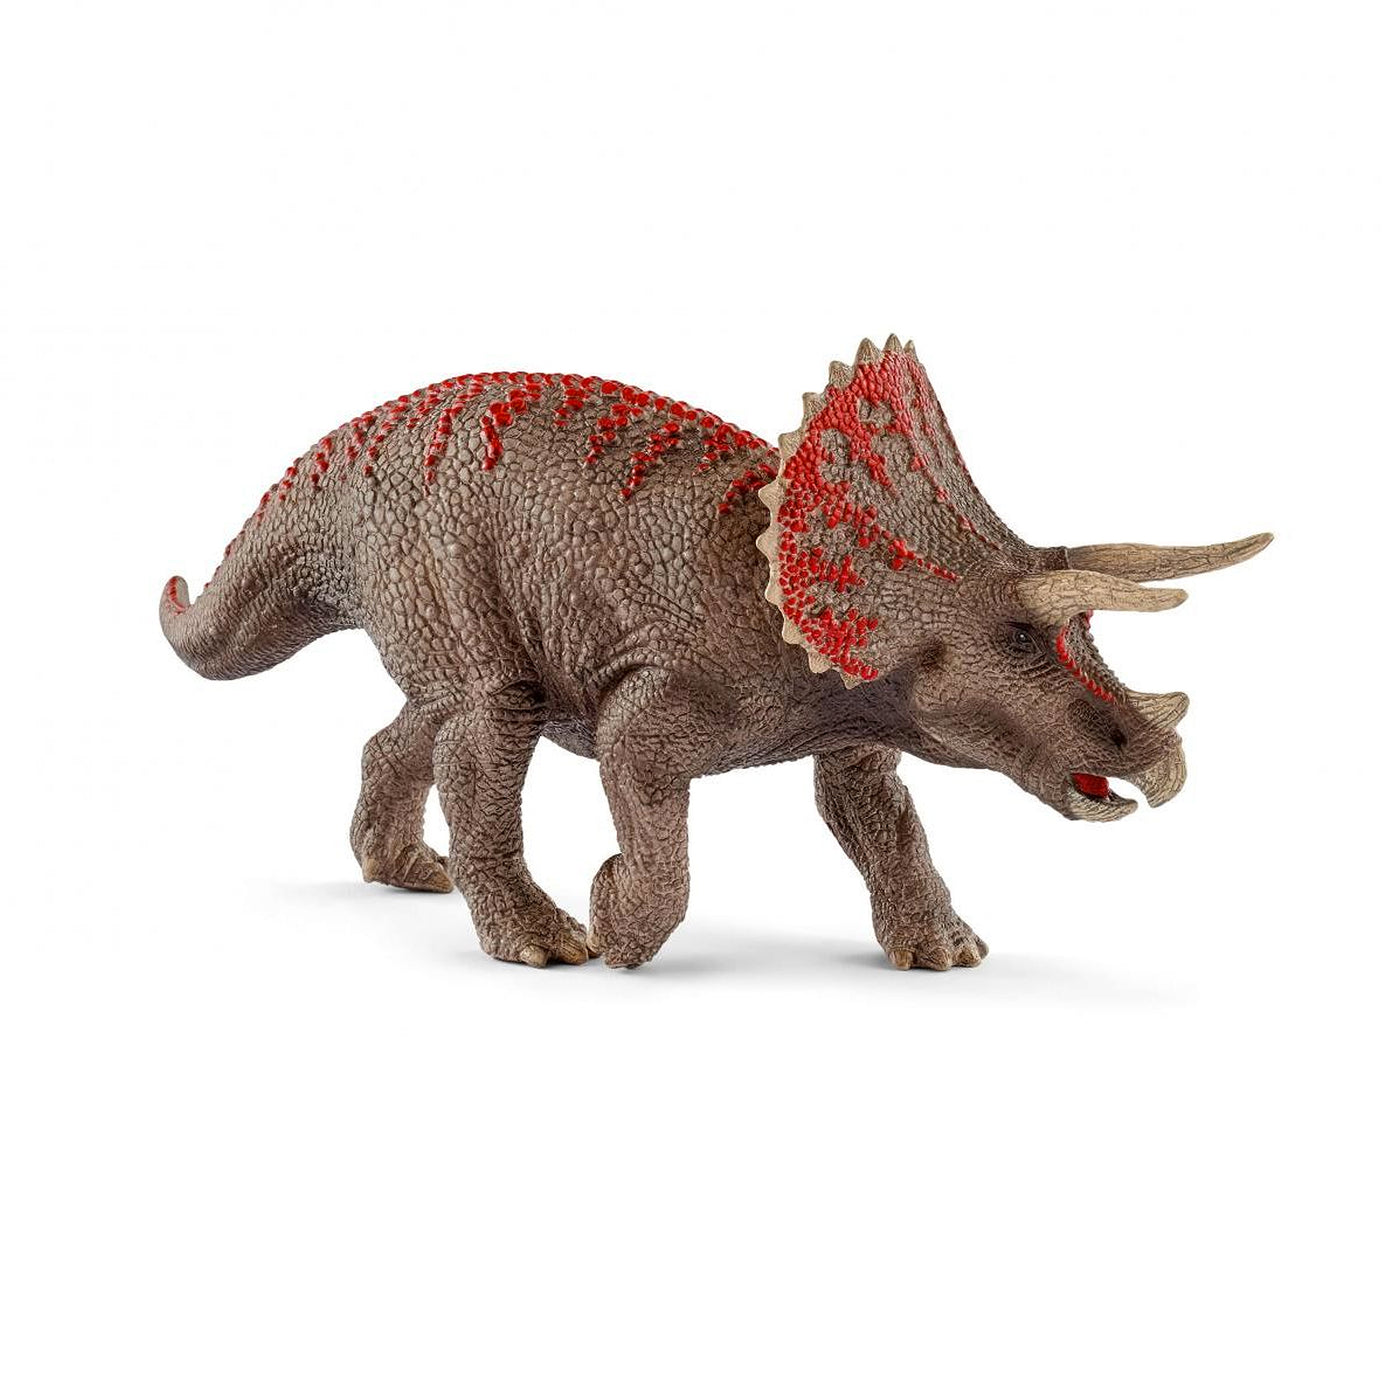 Schleich Dinosaurs Triceratops Toy Figurine